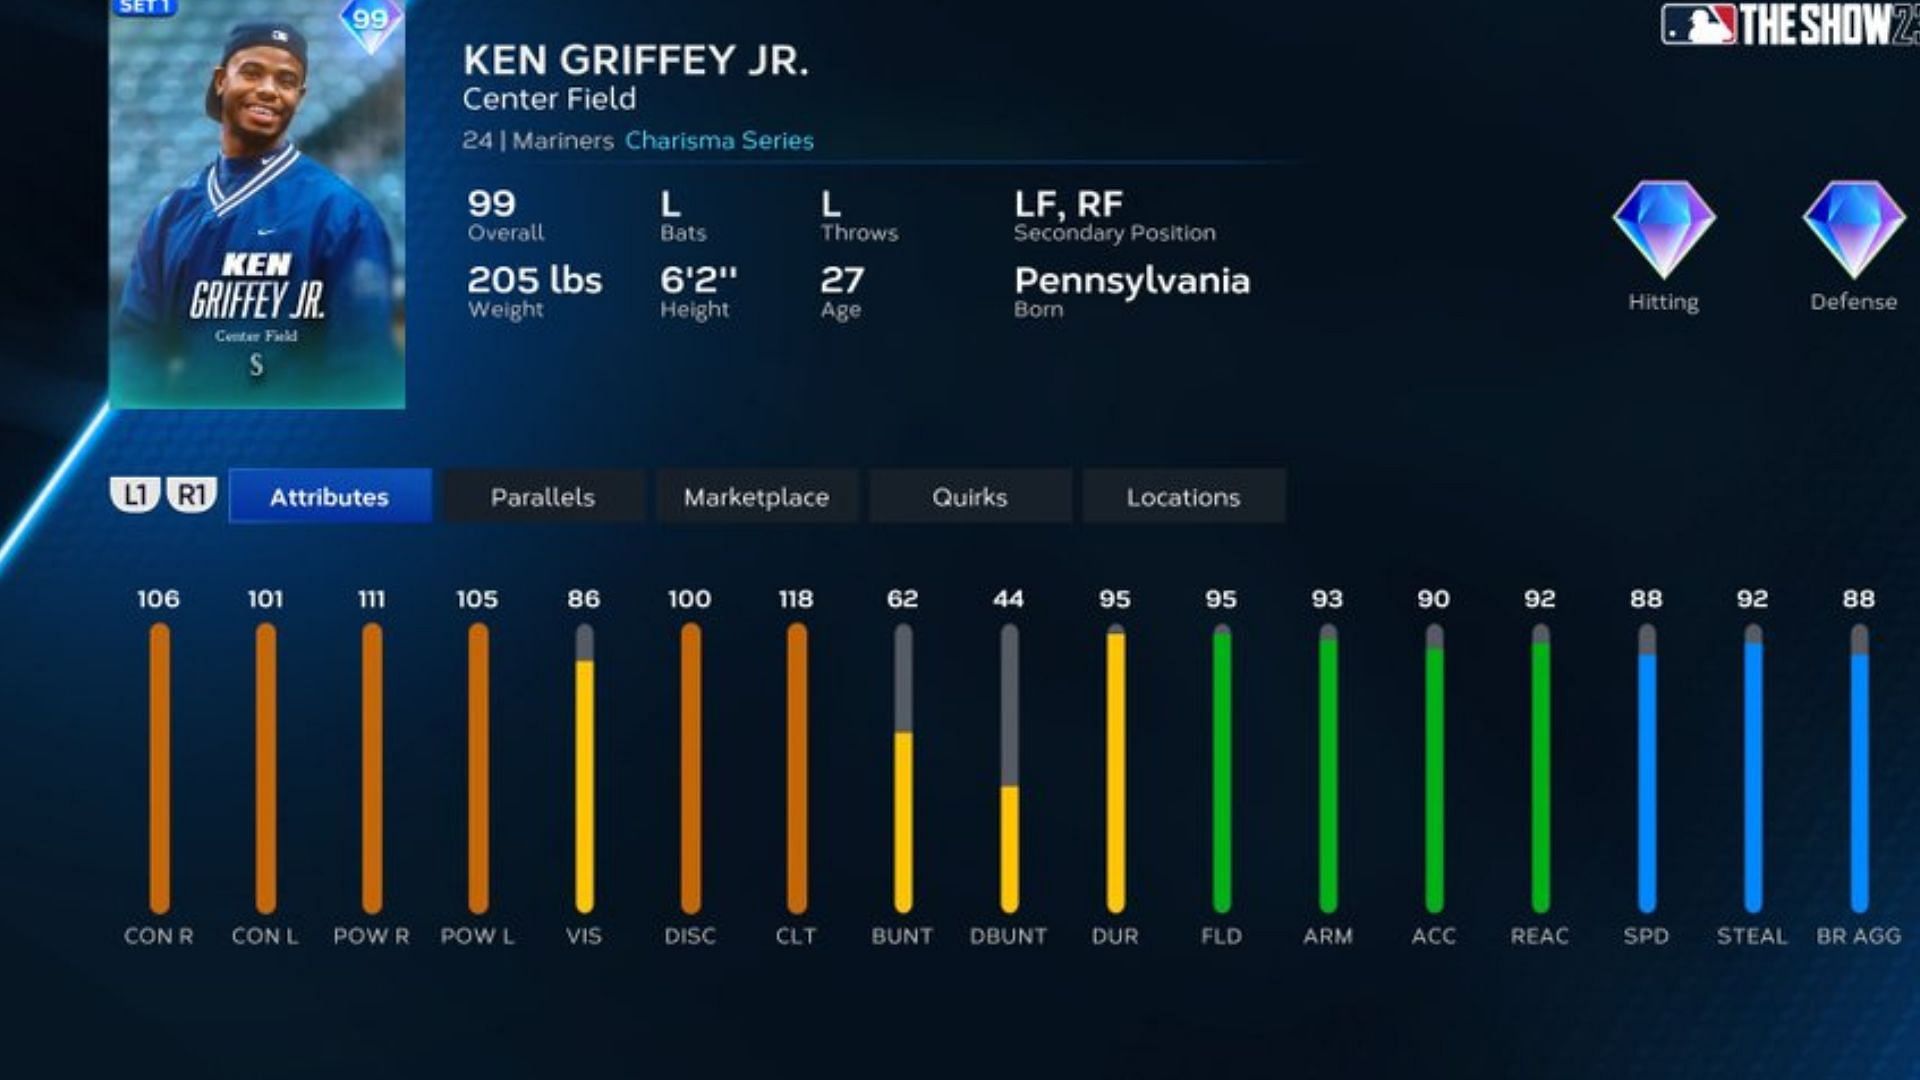 Ken Griffey Jr. Card Stats